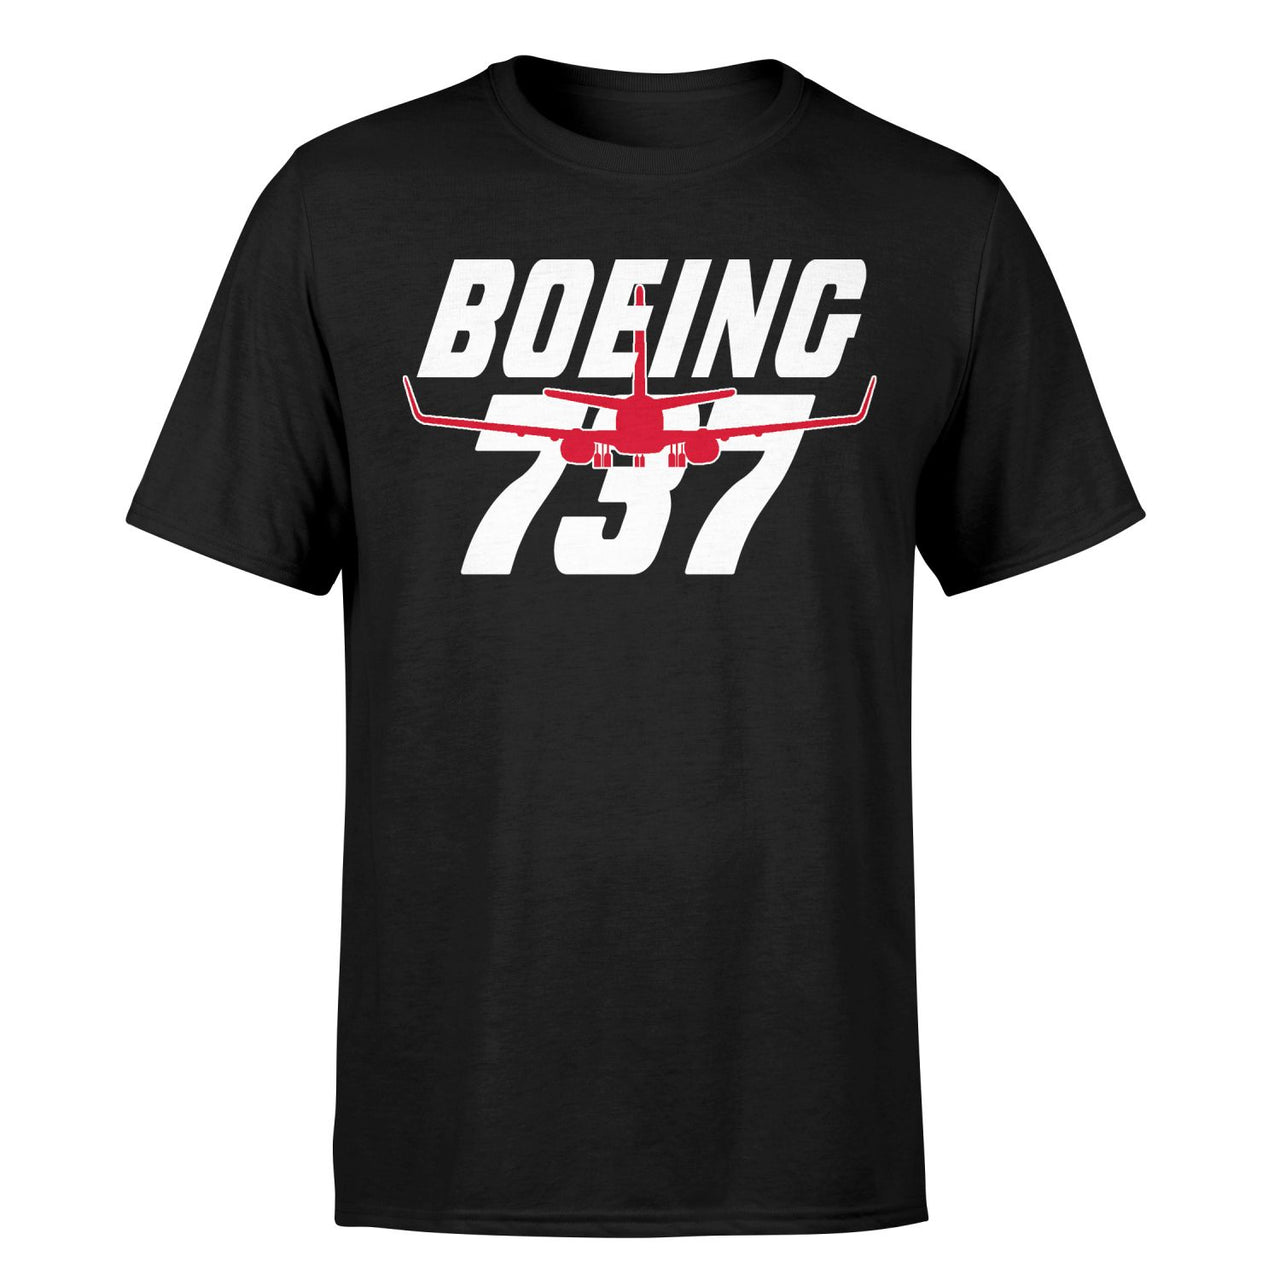 Amazing Boeing 737 Designed T-Shirts